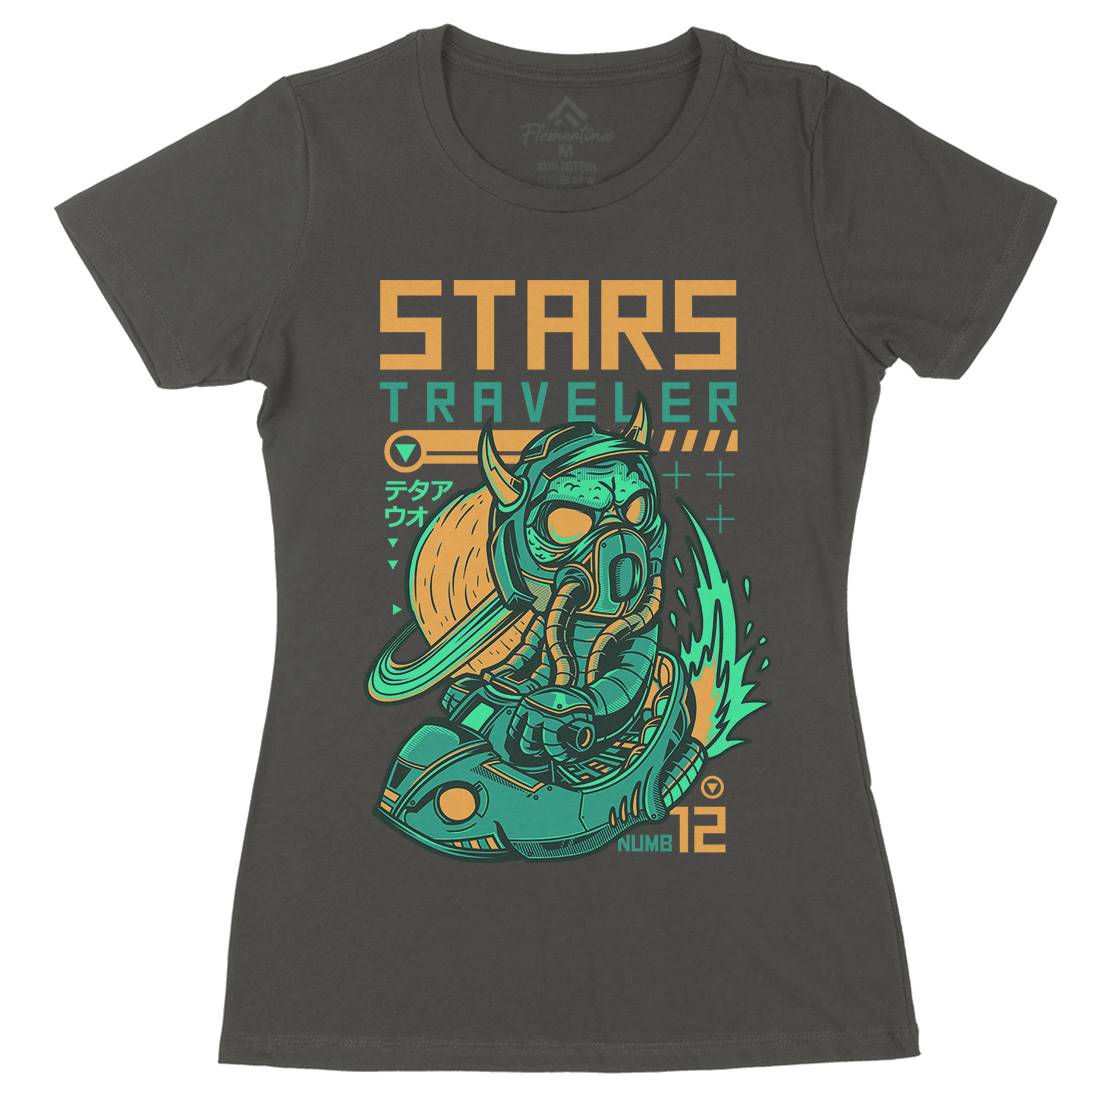 Stars Traveller Womens Organic Crew Neck T-Shirt Space D836